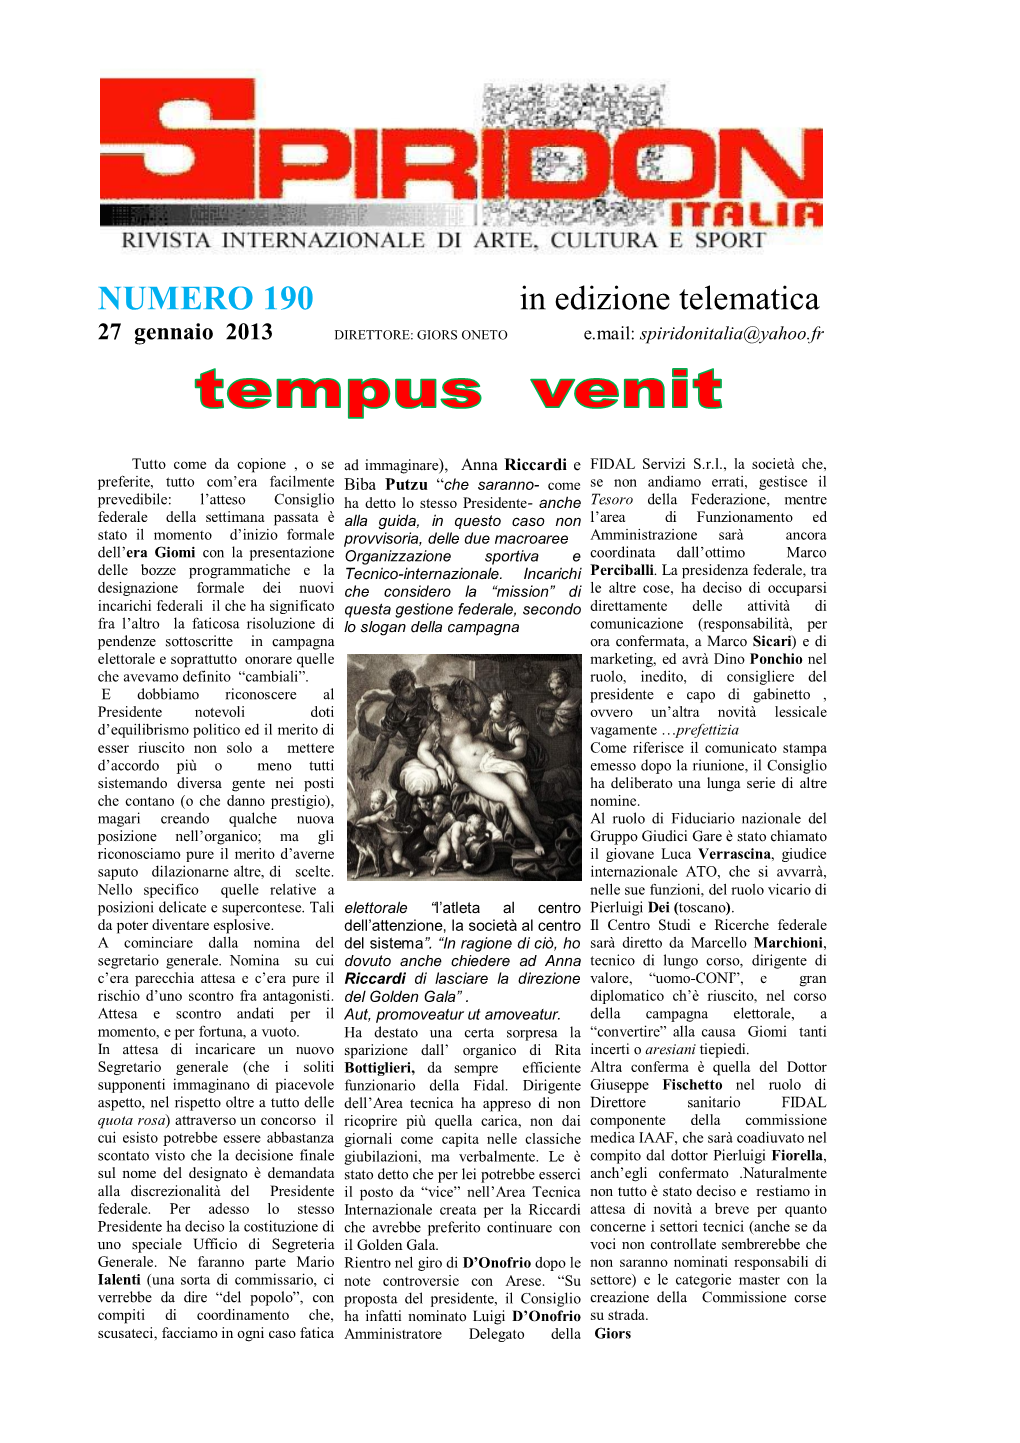 NUMERO 190 in Edizione Telematica 27 Gennaio 2013 DIRETTORE: GIORS ONETO E.Mail: Spiridonitalia@Yahoo.Fr